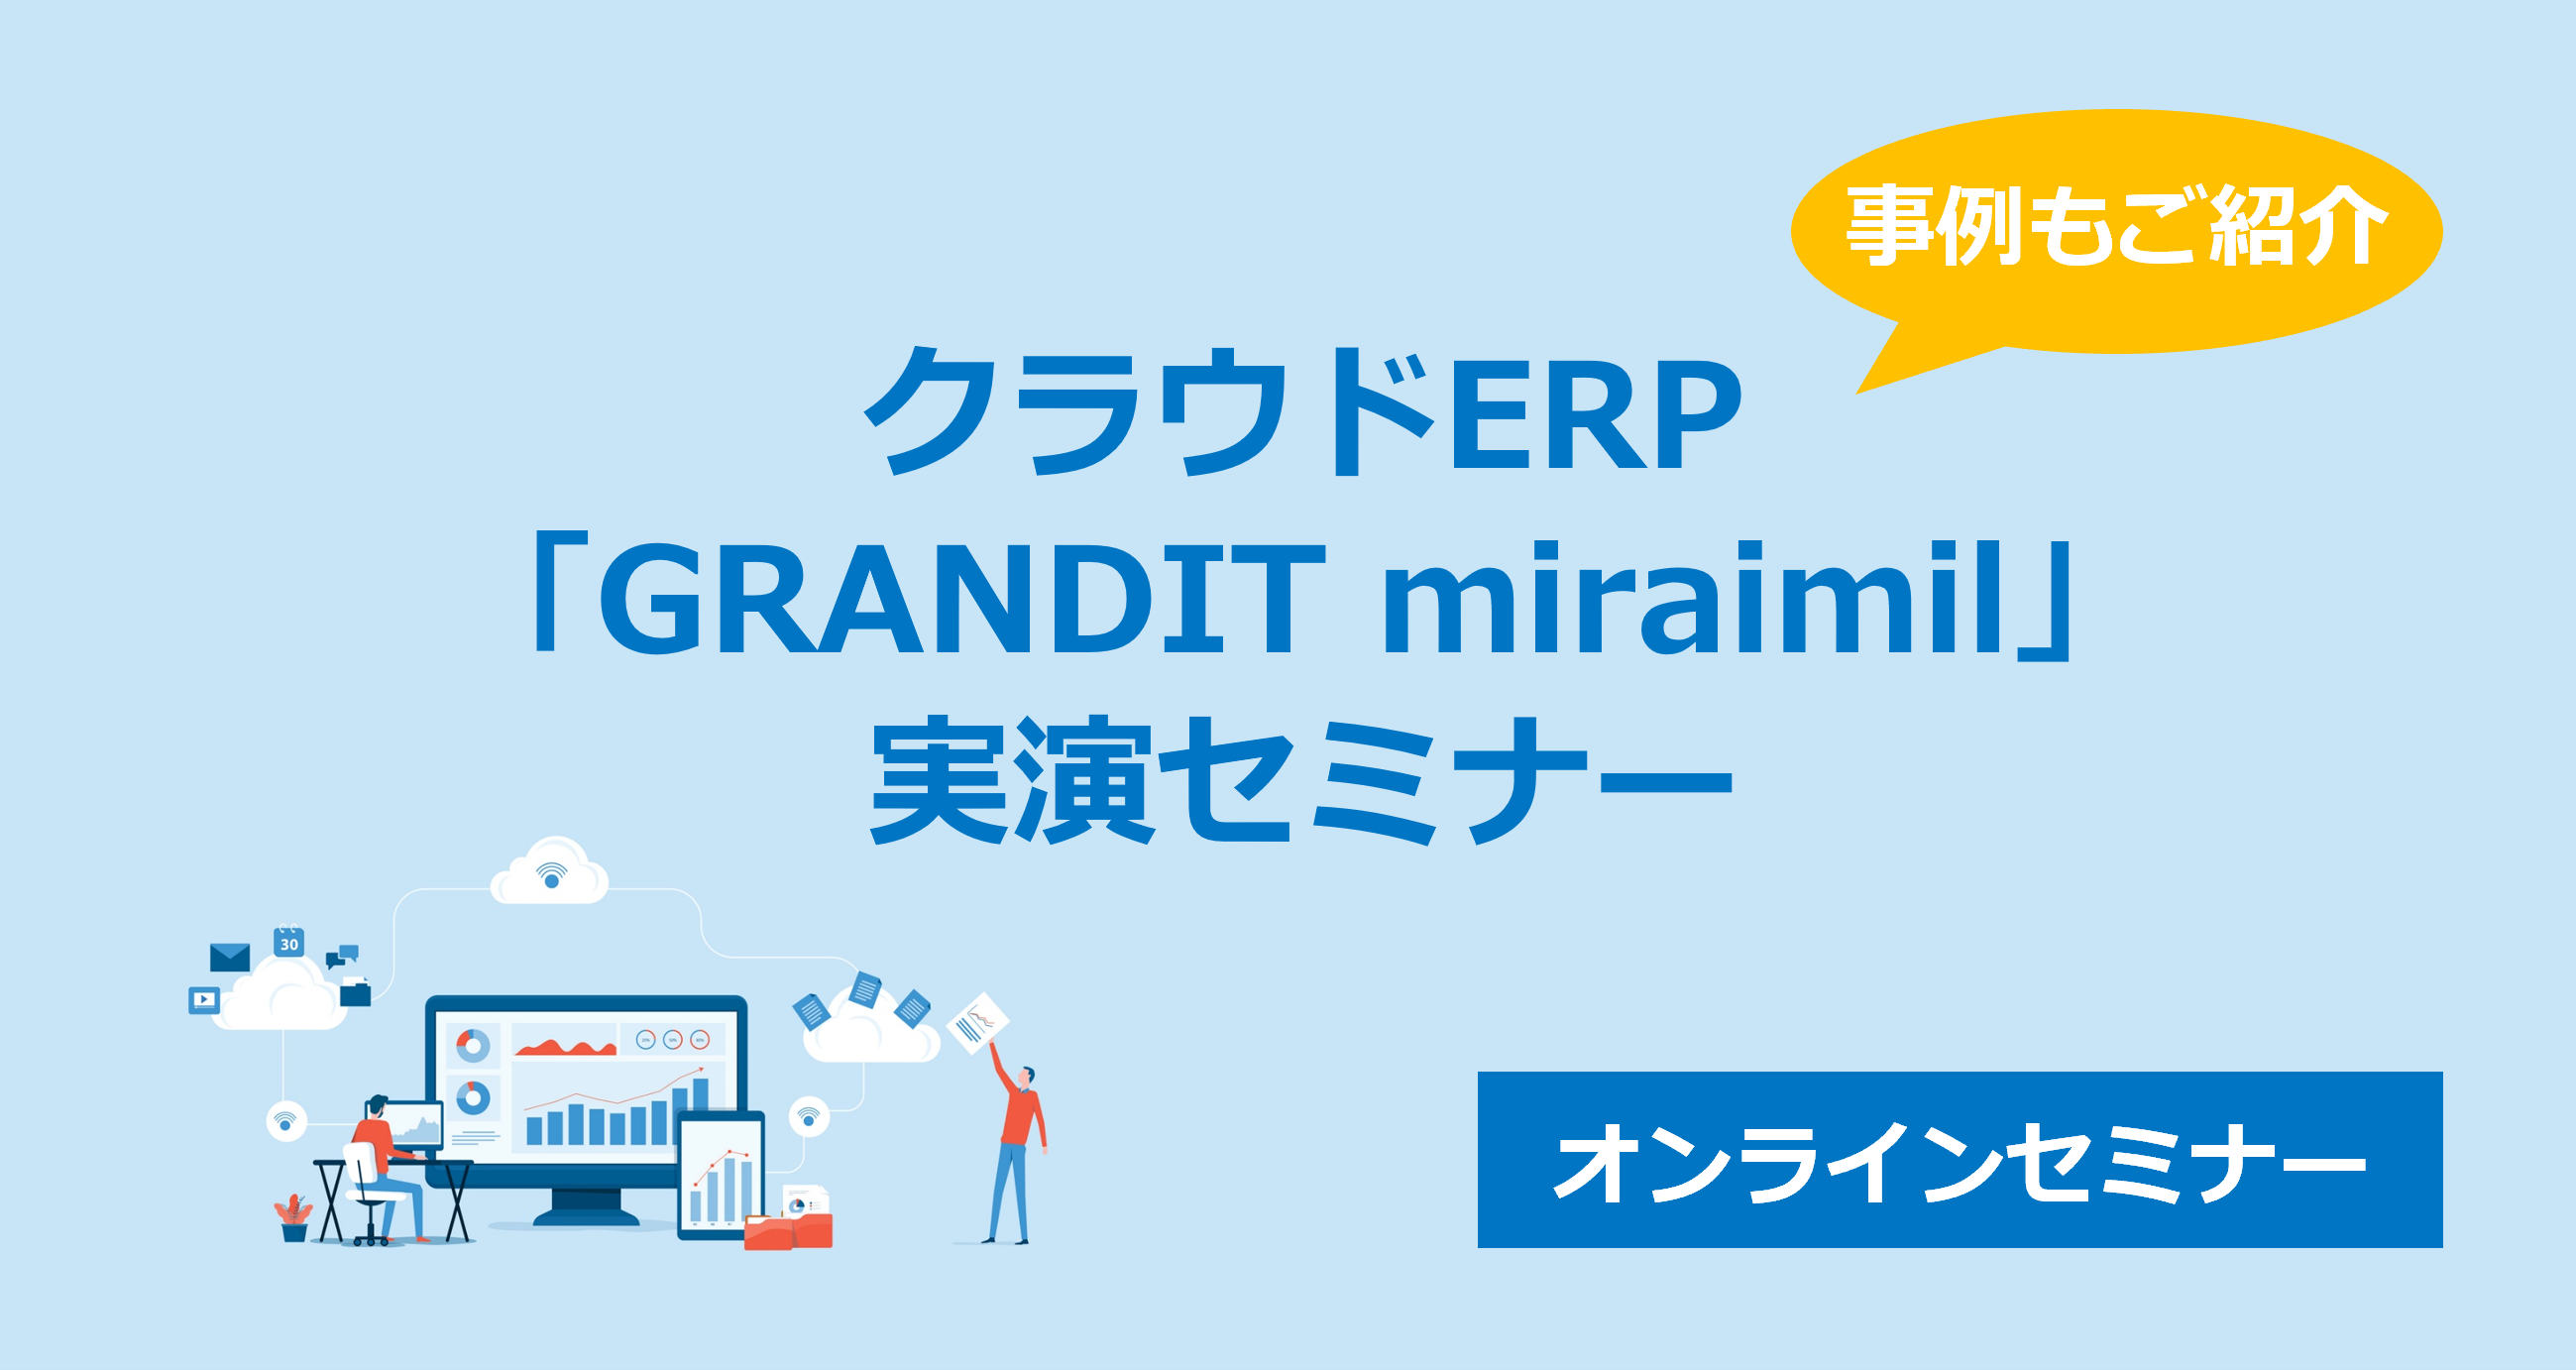 クラウドERP「GRANDIT miraimil」実演セミナー 無料開催1月30日(火)